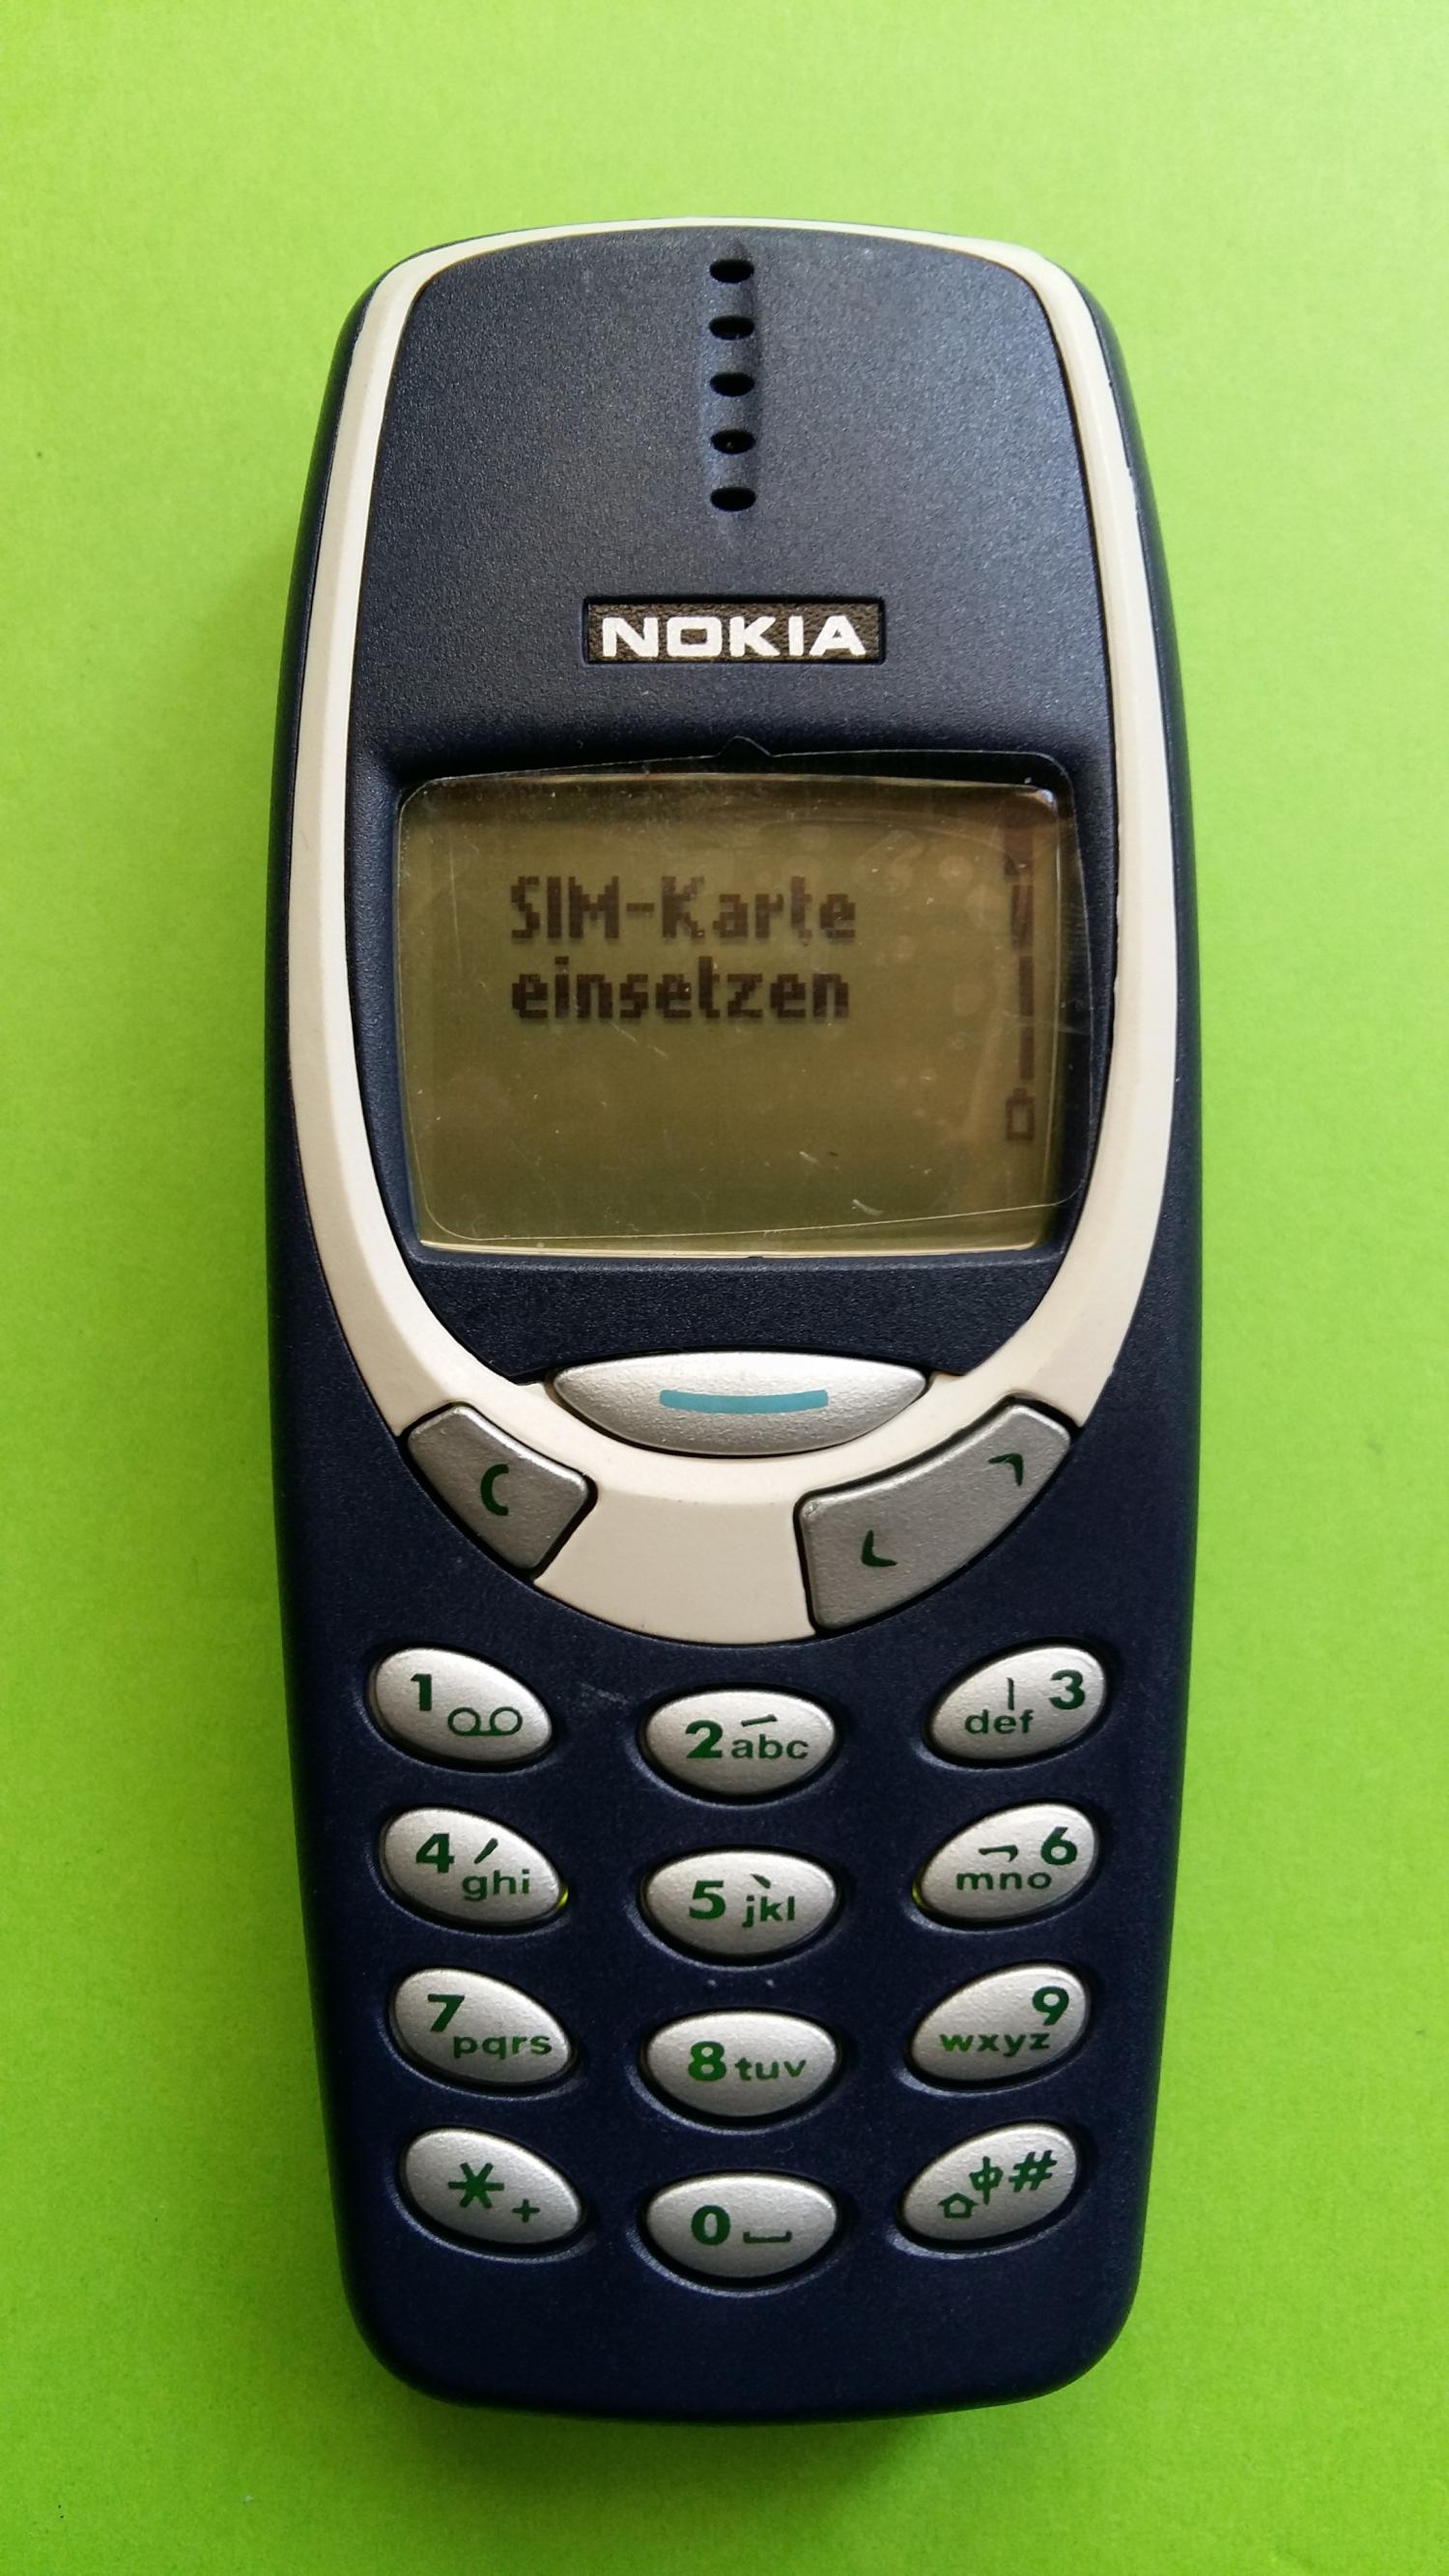 image-7313352-Nokia 3310 (1)1.jpg